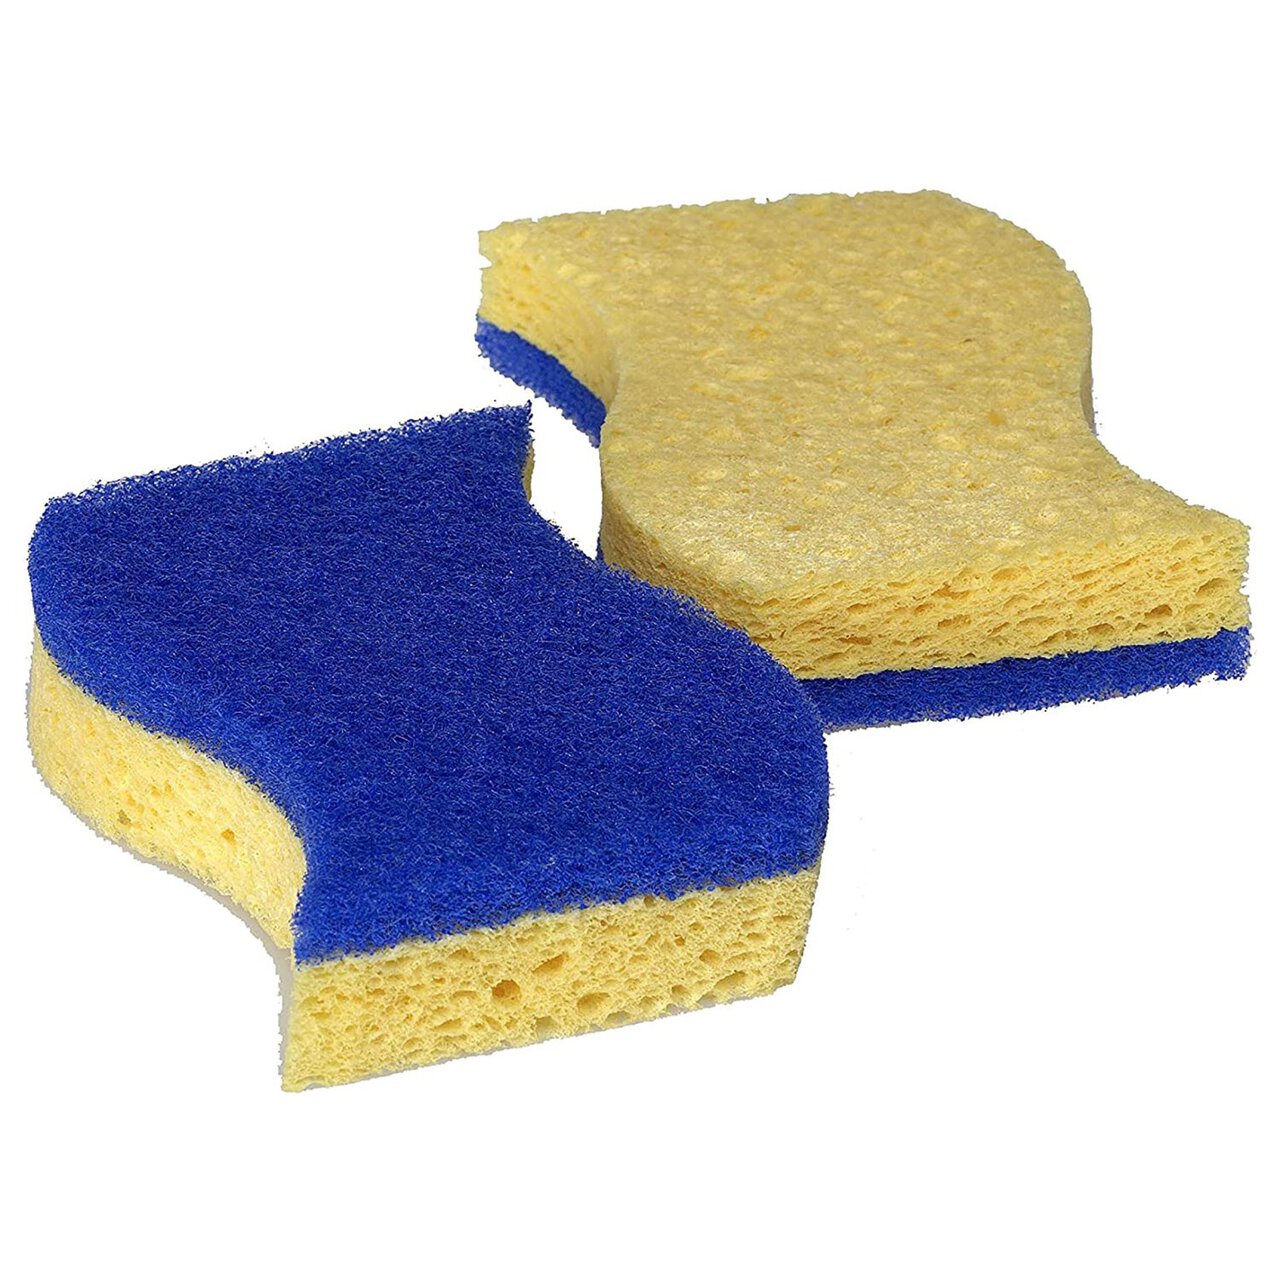 PUR Active Non-Scratch Viscose Sponge Scourer 2-Pack